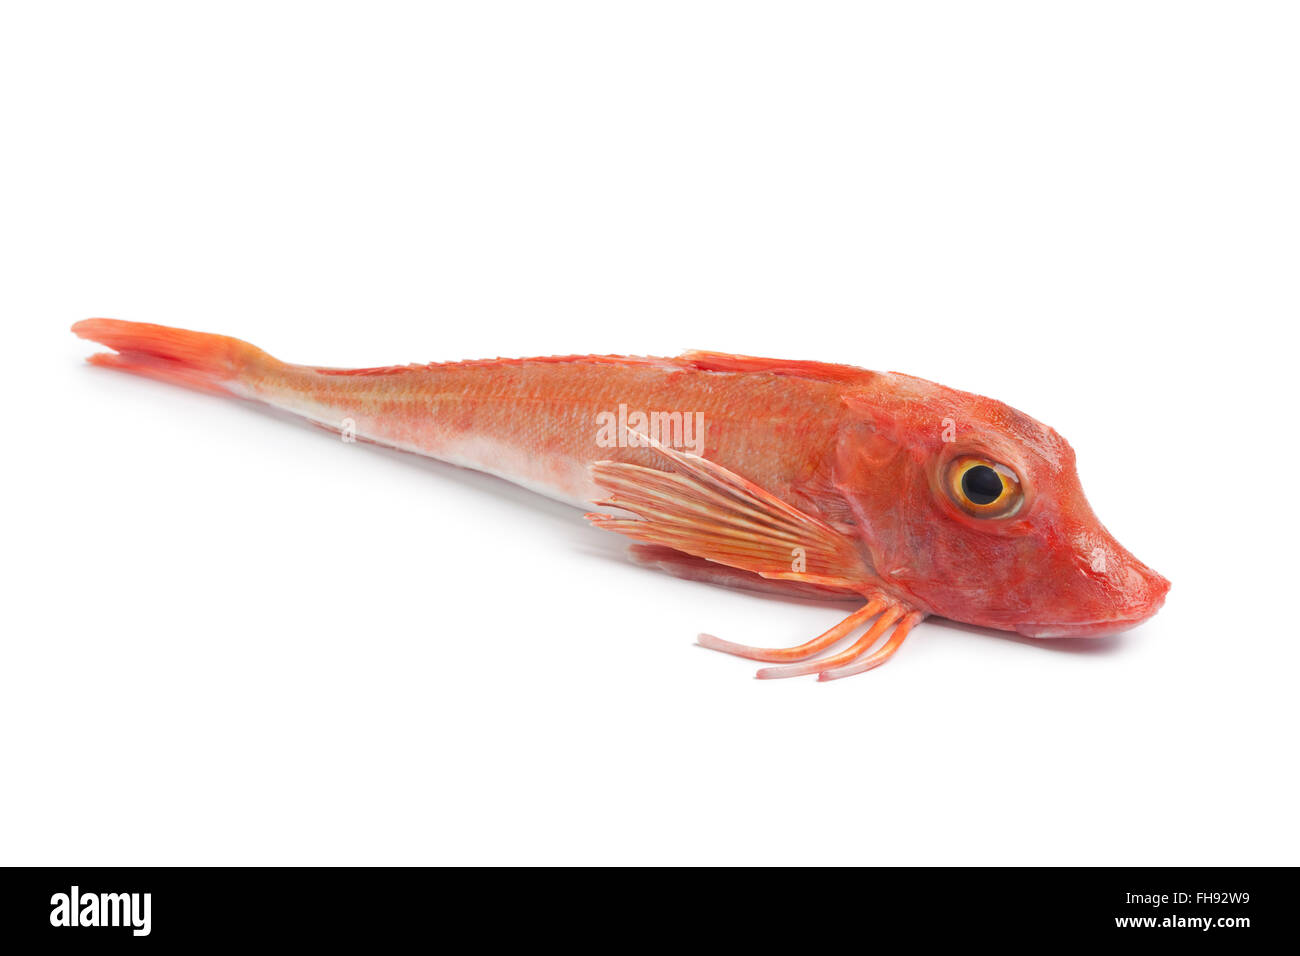 Whole single fresh red raw Tub gurnard fish on white background Stock Photo